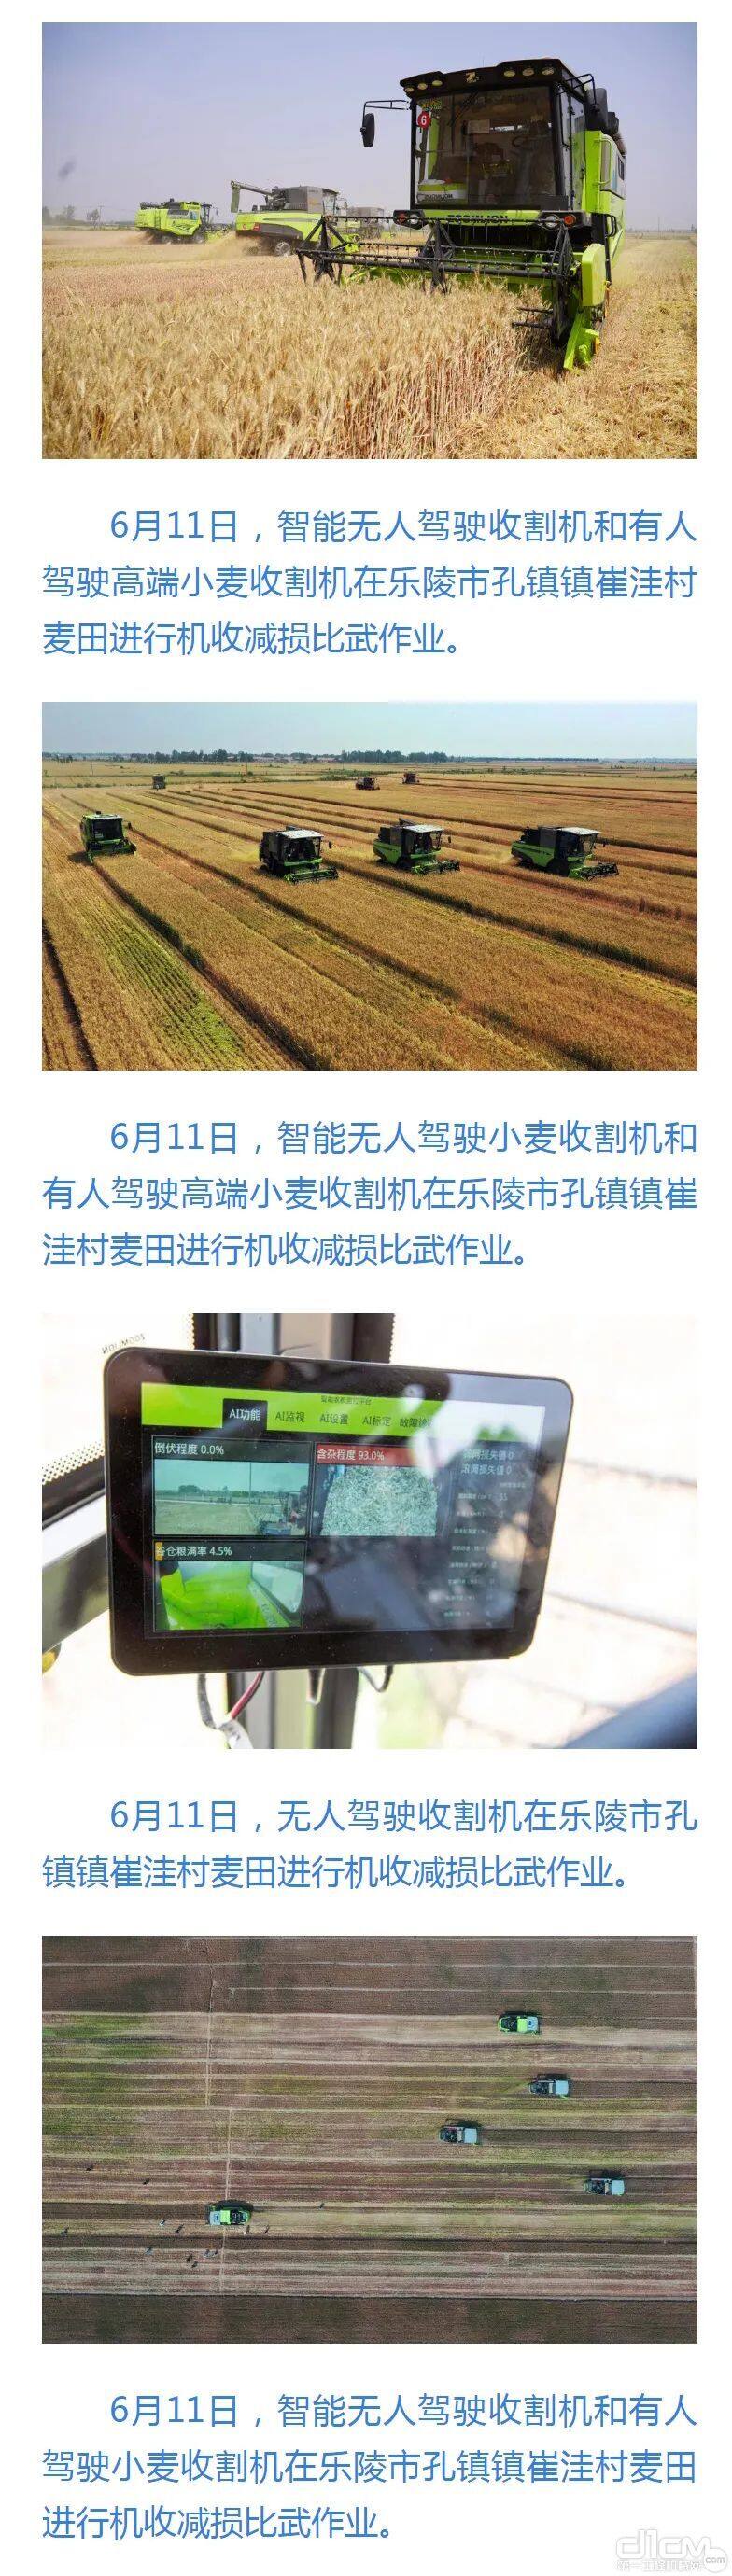 新华社客户端发表文章关注中联重科人工智能收割机服务三夏麦收